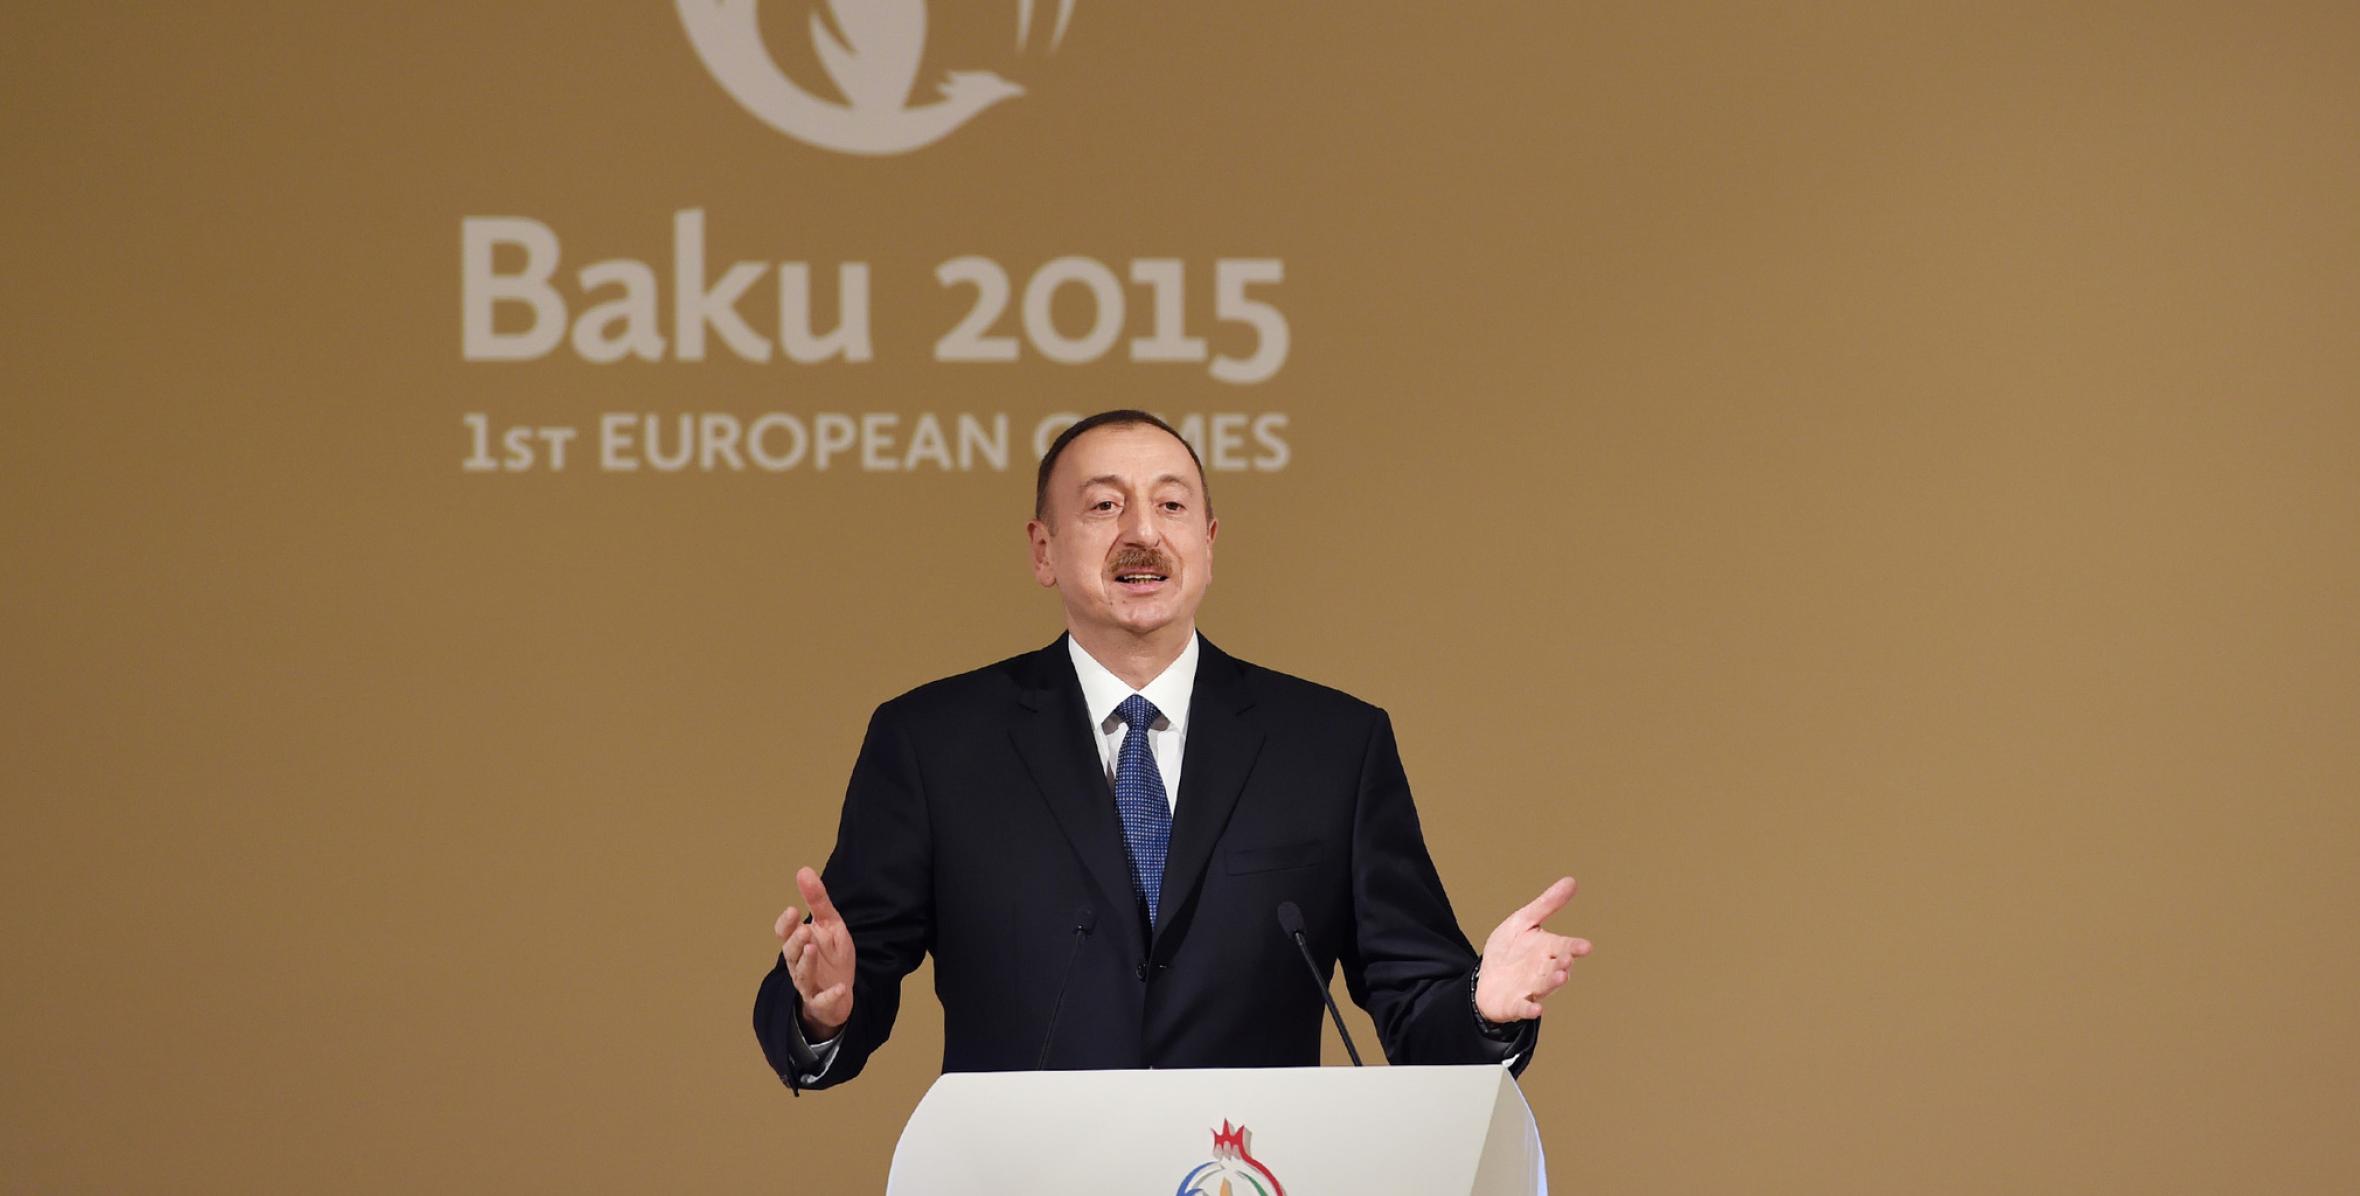 Речь Ильхама Алиева на церемонии награждения в связи с первыми Европейскими играми